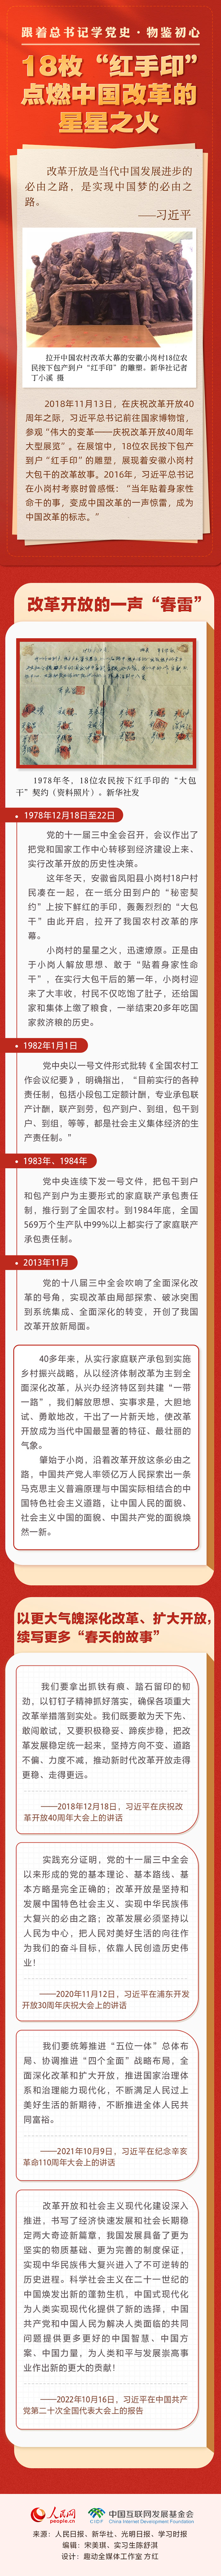 18枚“红手印” 点燃中国改革的星星之火12.20.jpg